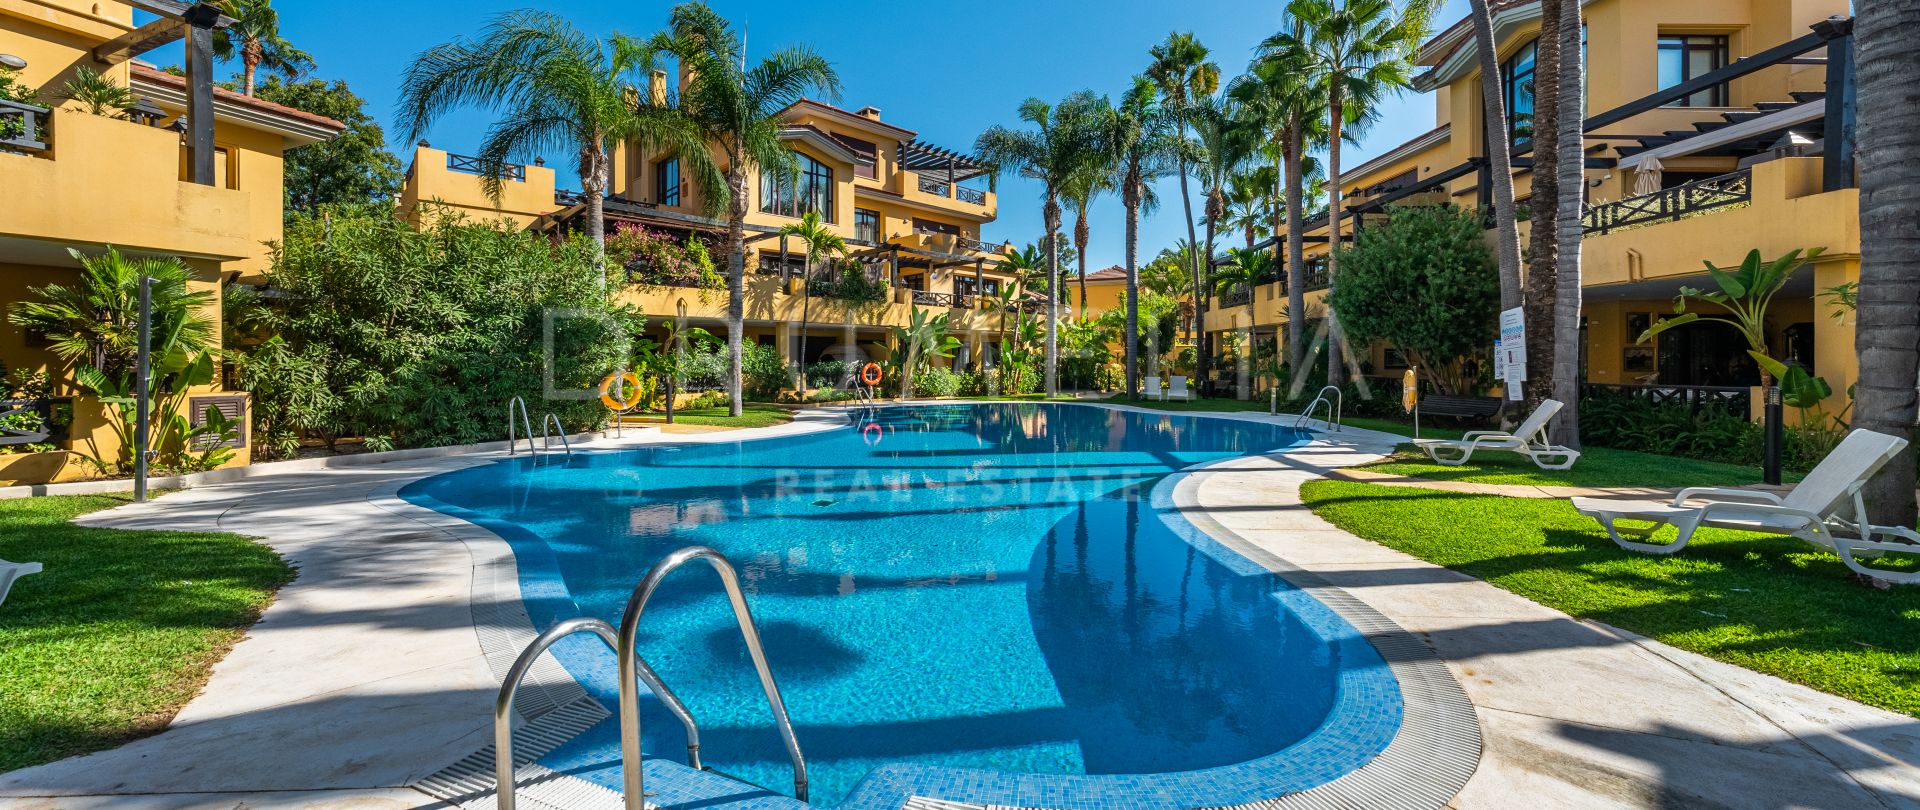 Beautiful Luxury Apartment for Sale in Beachside Bahia de Banus, Puerto Banus, Marbella.